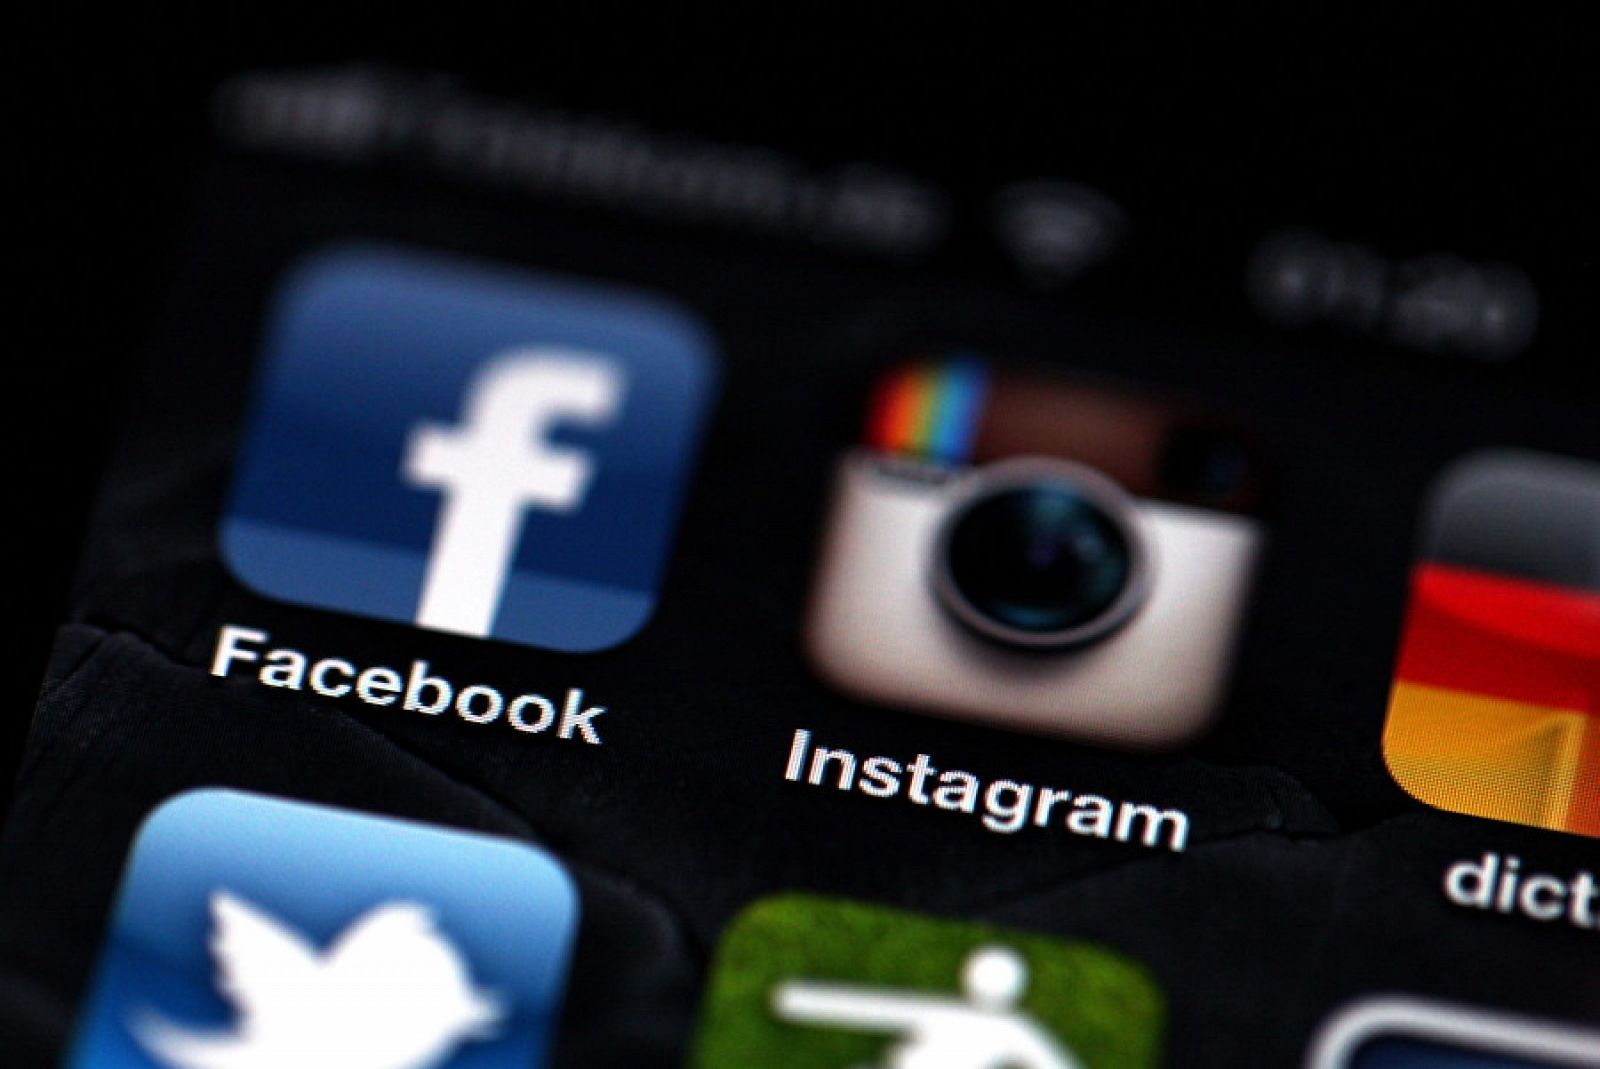 La red social Facebook anunció este lunes la compra de la aplicación fotográfica para dispositivos móviles Instagram en una operación valorada en 1.000 millones de dólares